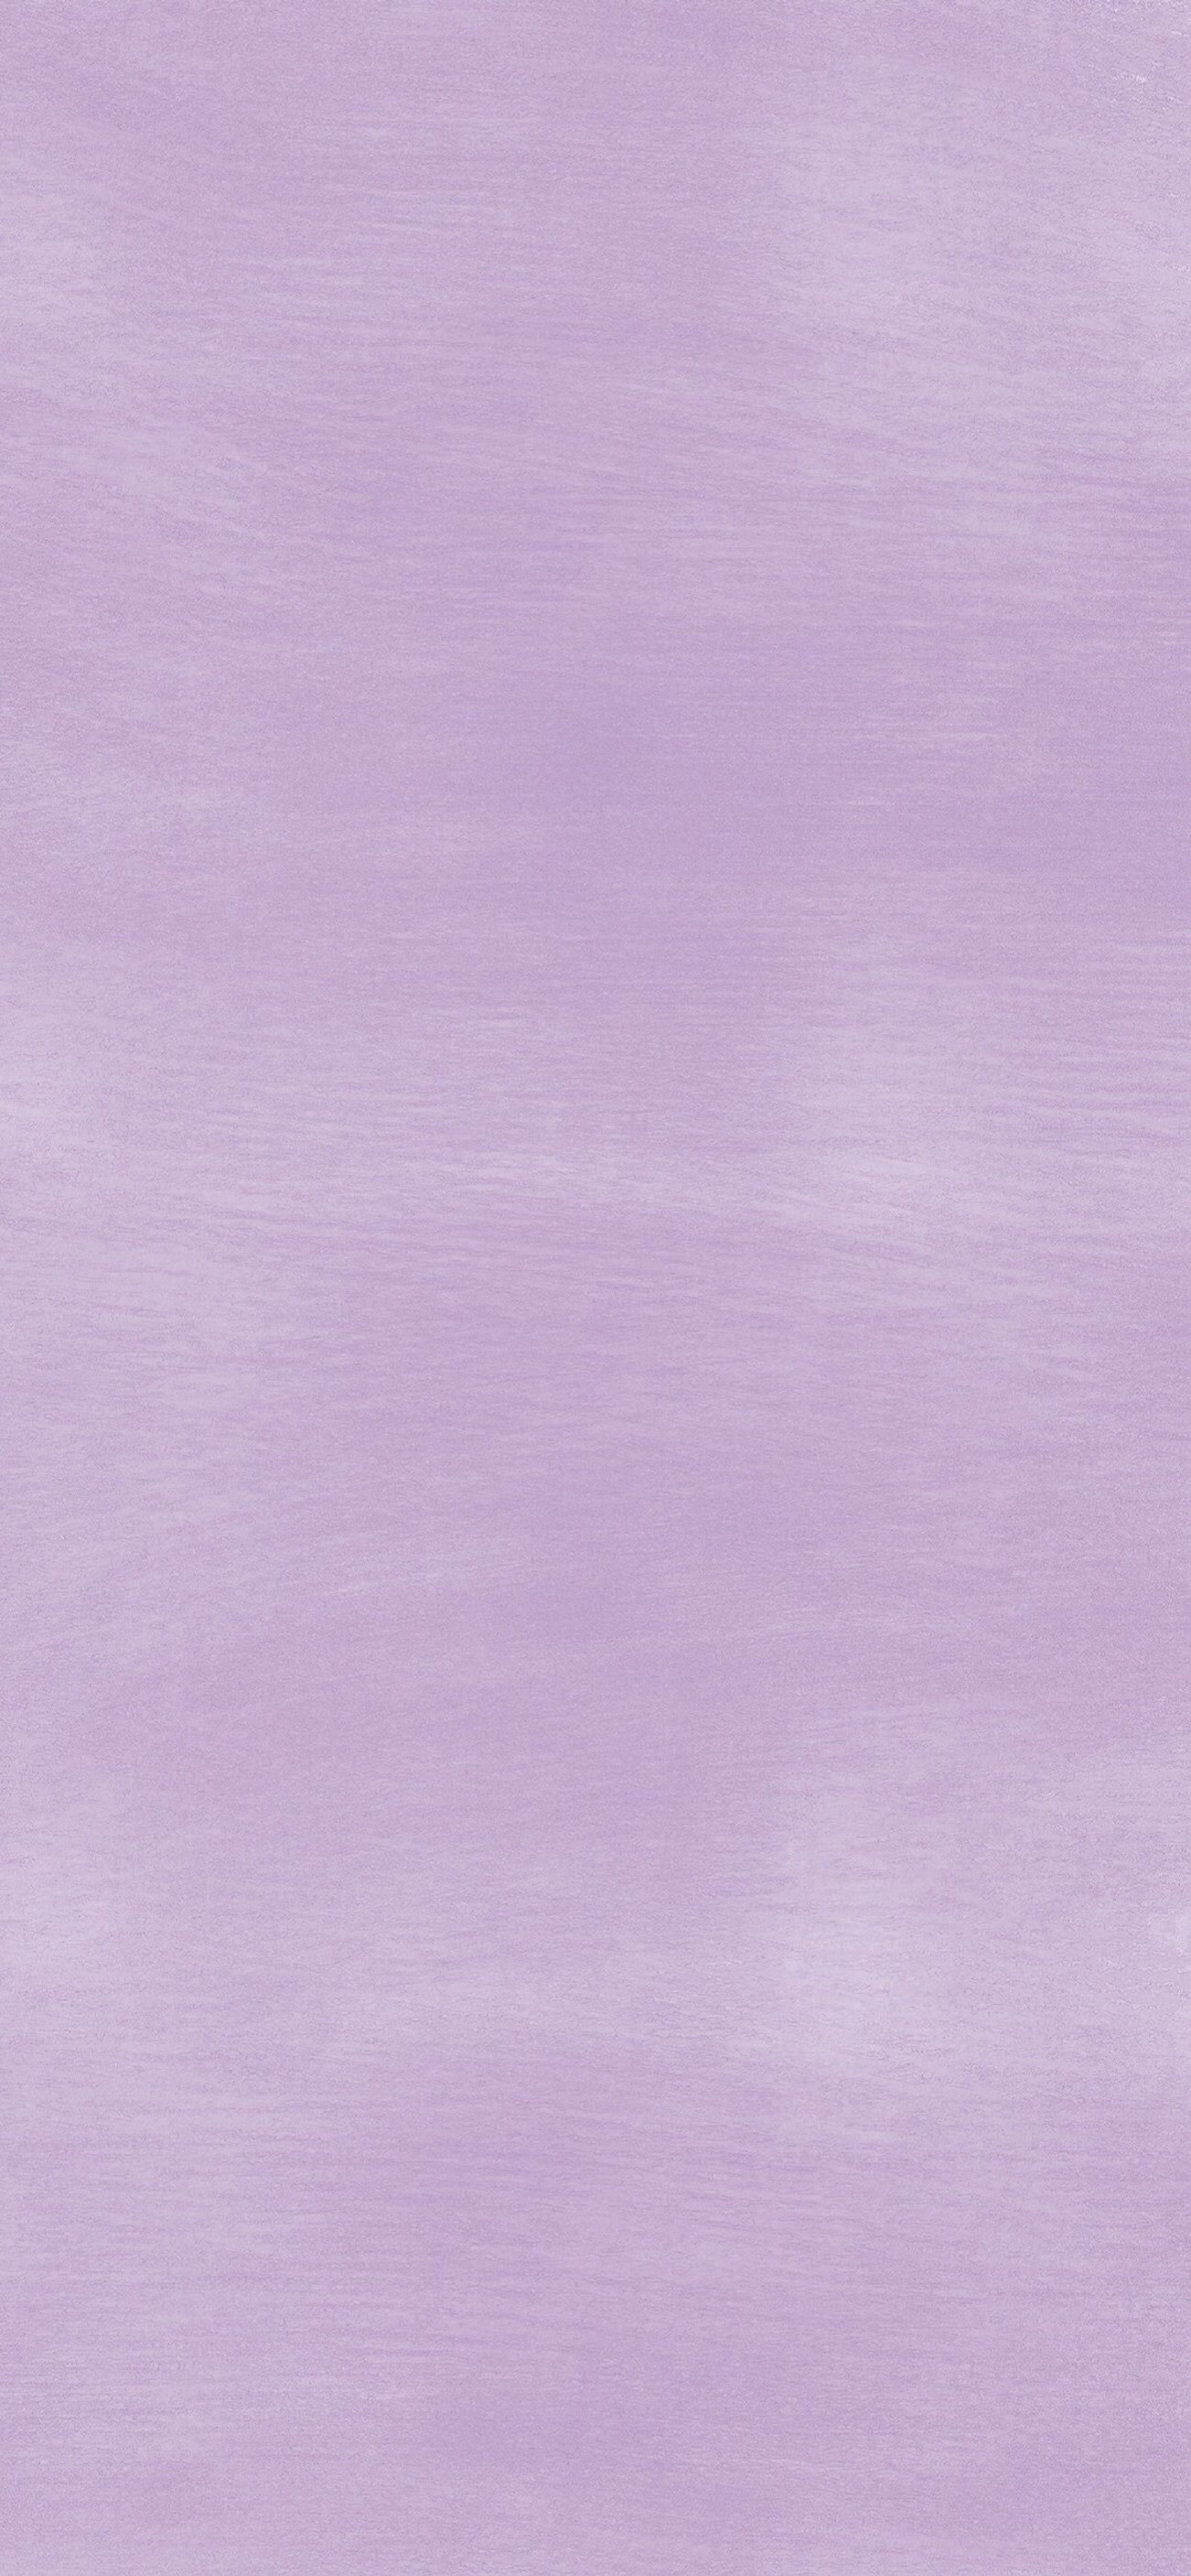 纯紫色底图图片